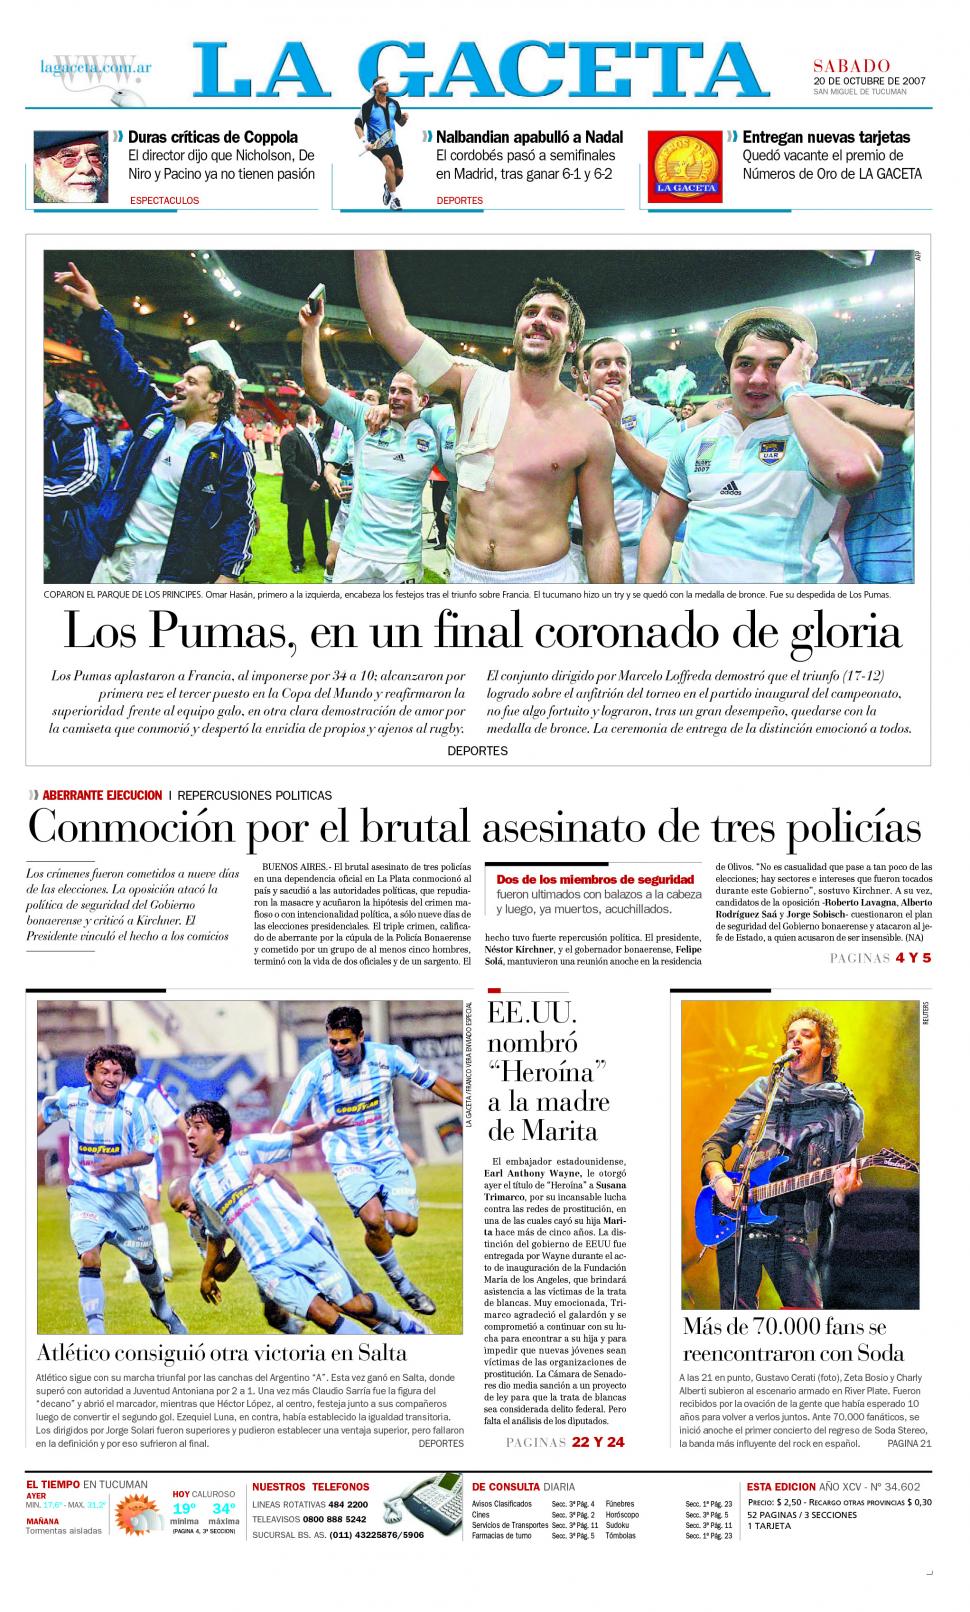 RECUERDO. La tapa de LA GACETA del 20 de octubre tuvo como tema central la victoria argentina.